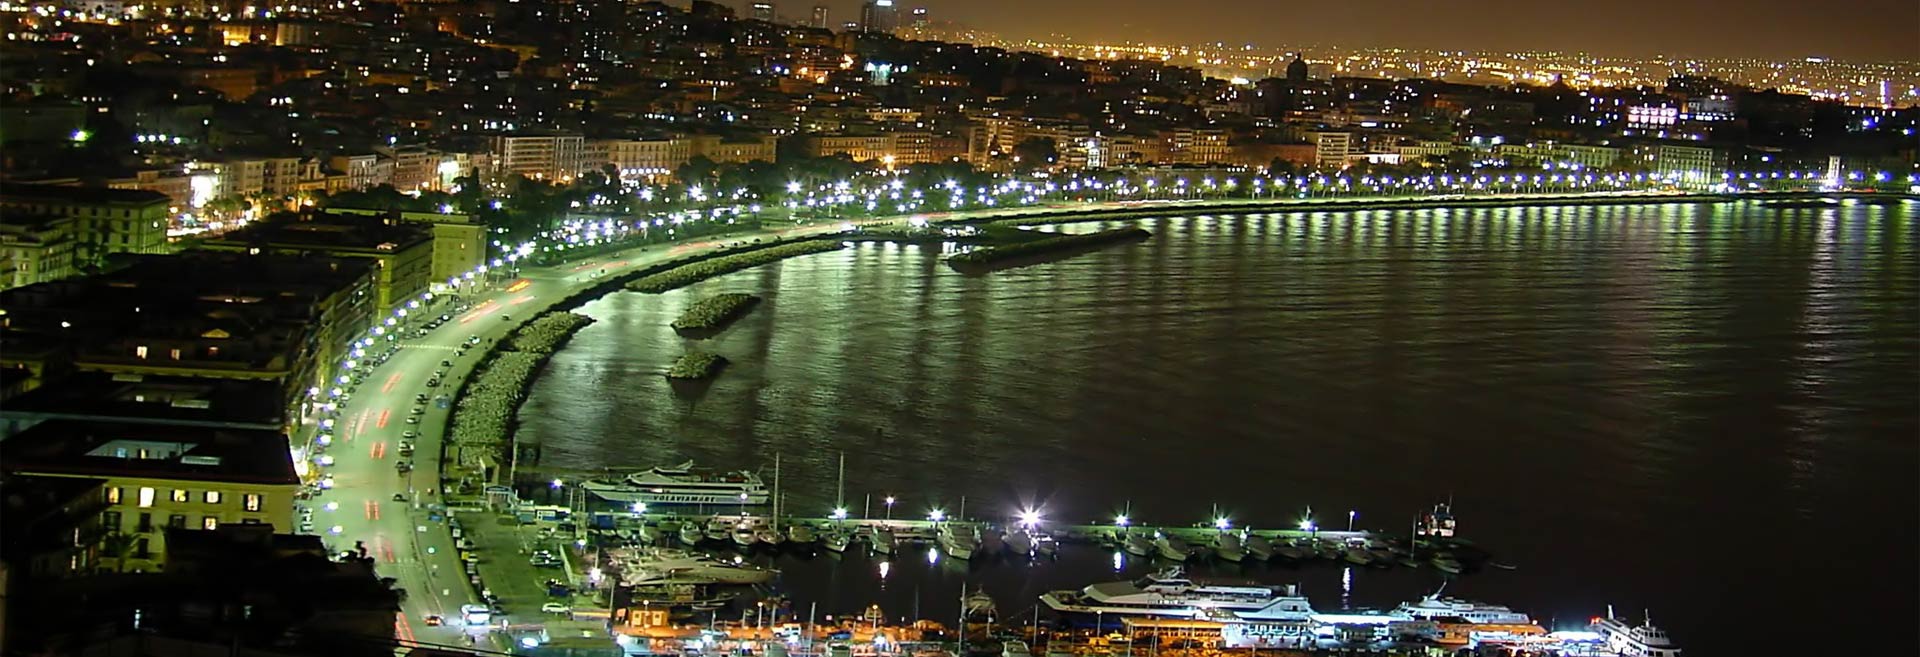 Neapel bei Nacht